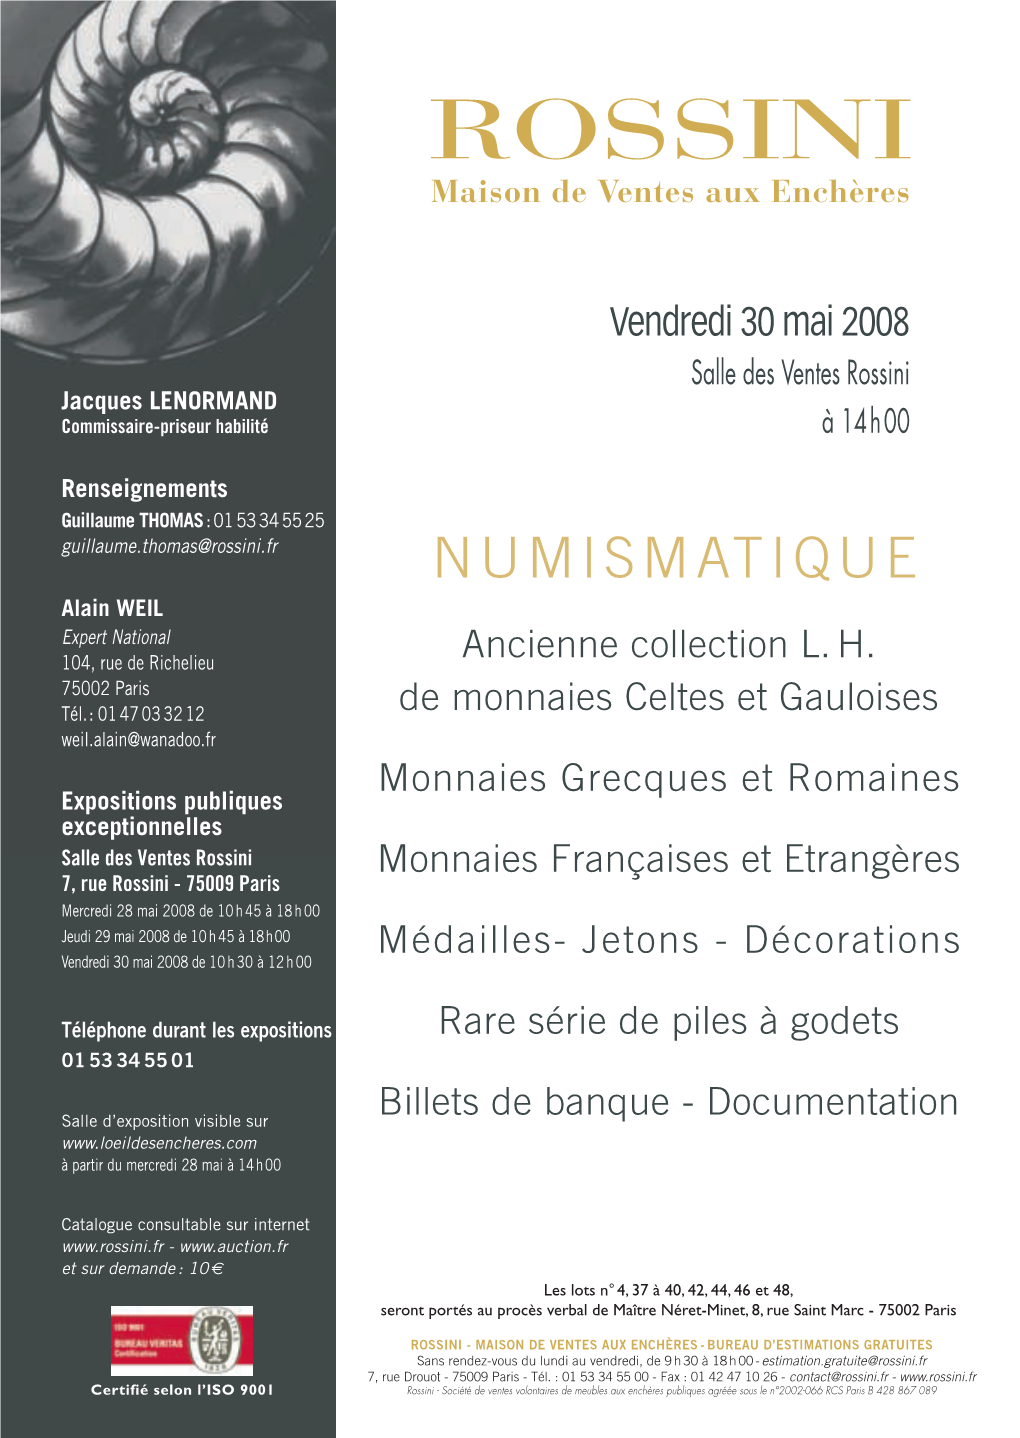 Catalogue Numismatique 300508.Qxd:Layout 1 27/04/08 20:02 Page 1